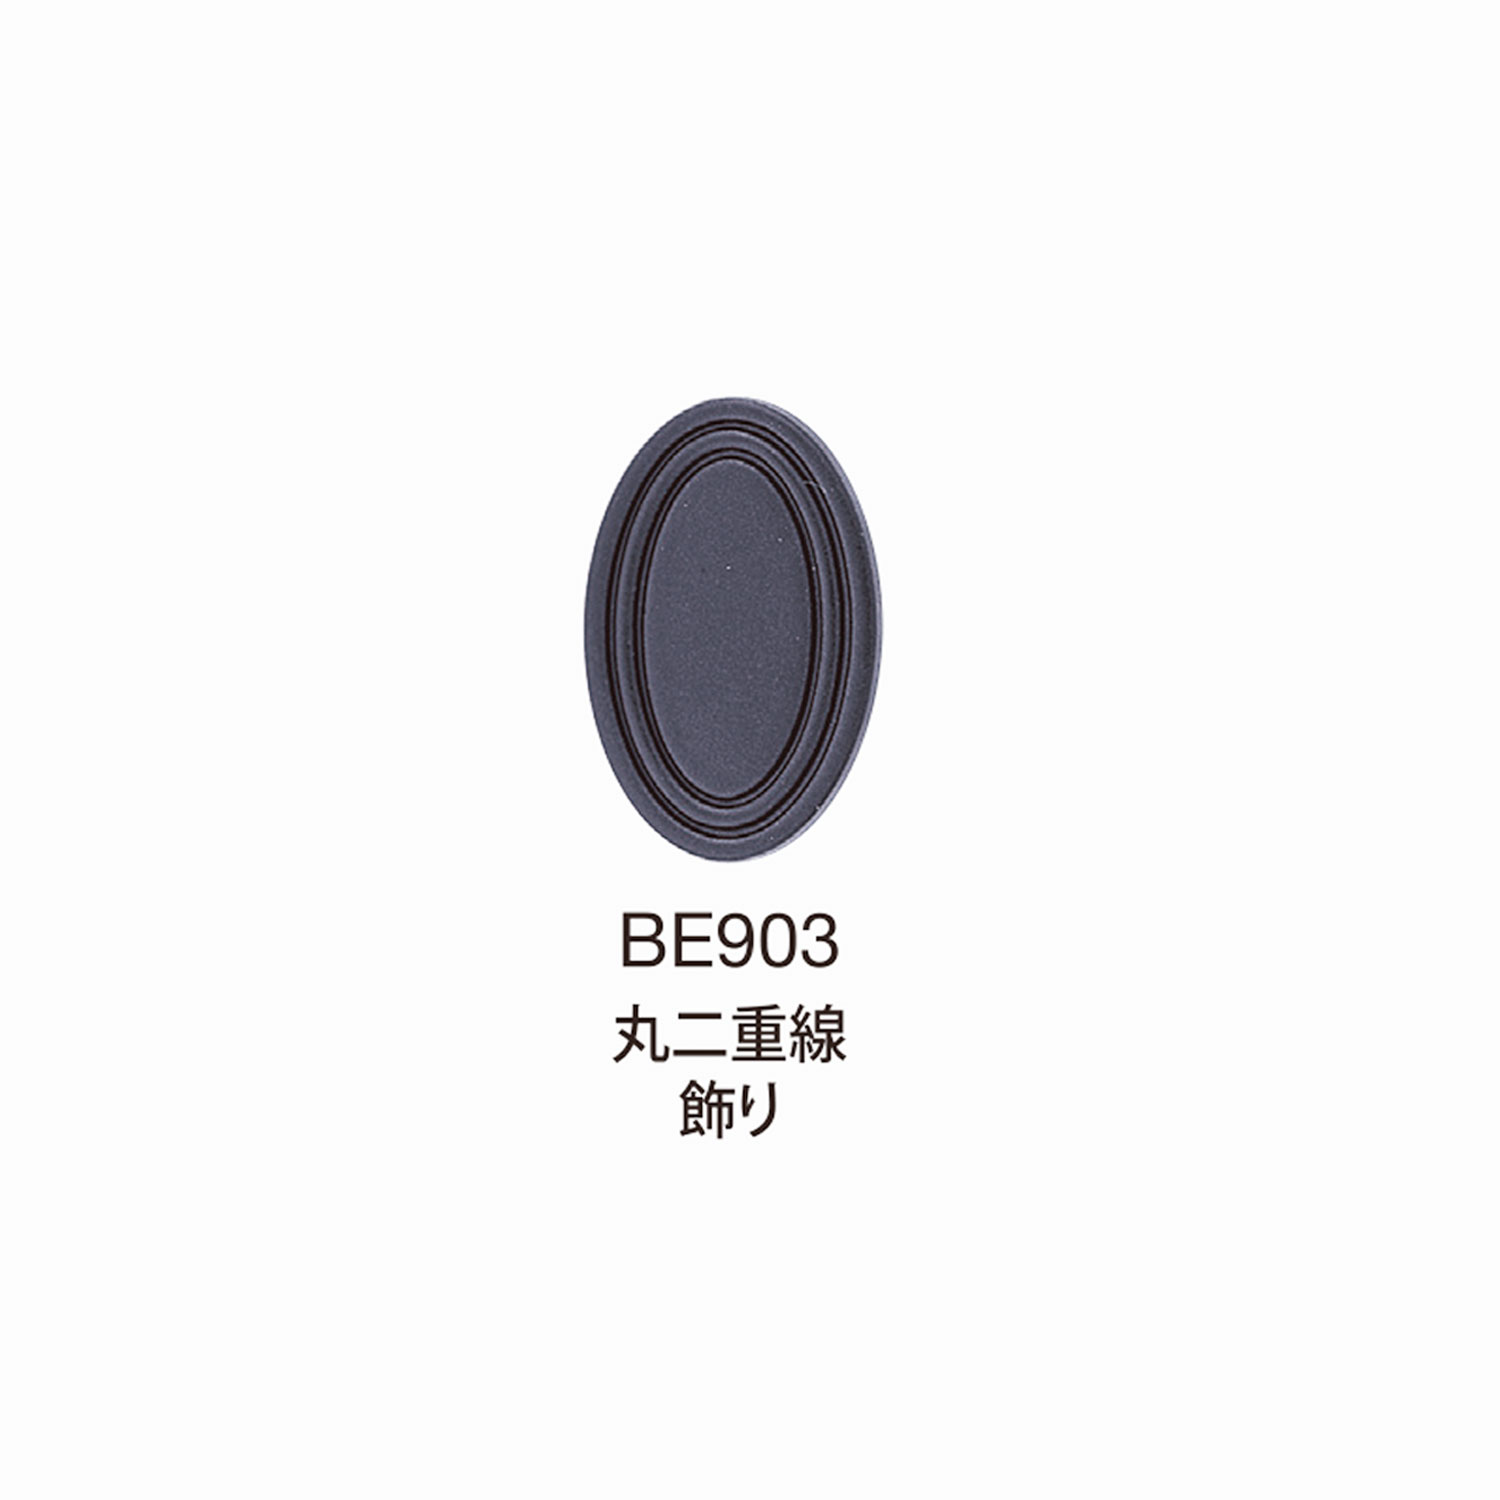 BE903 BEREX α Top Hardware Redondo Decoración De Doble Línea[Hebillas Y Anillo] Morito